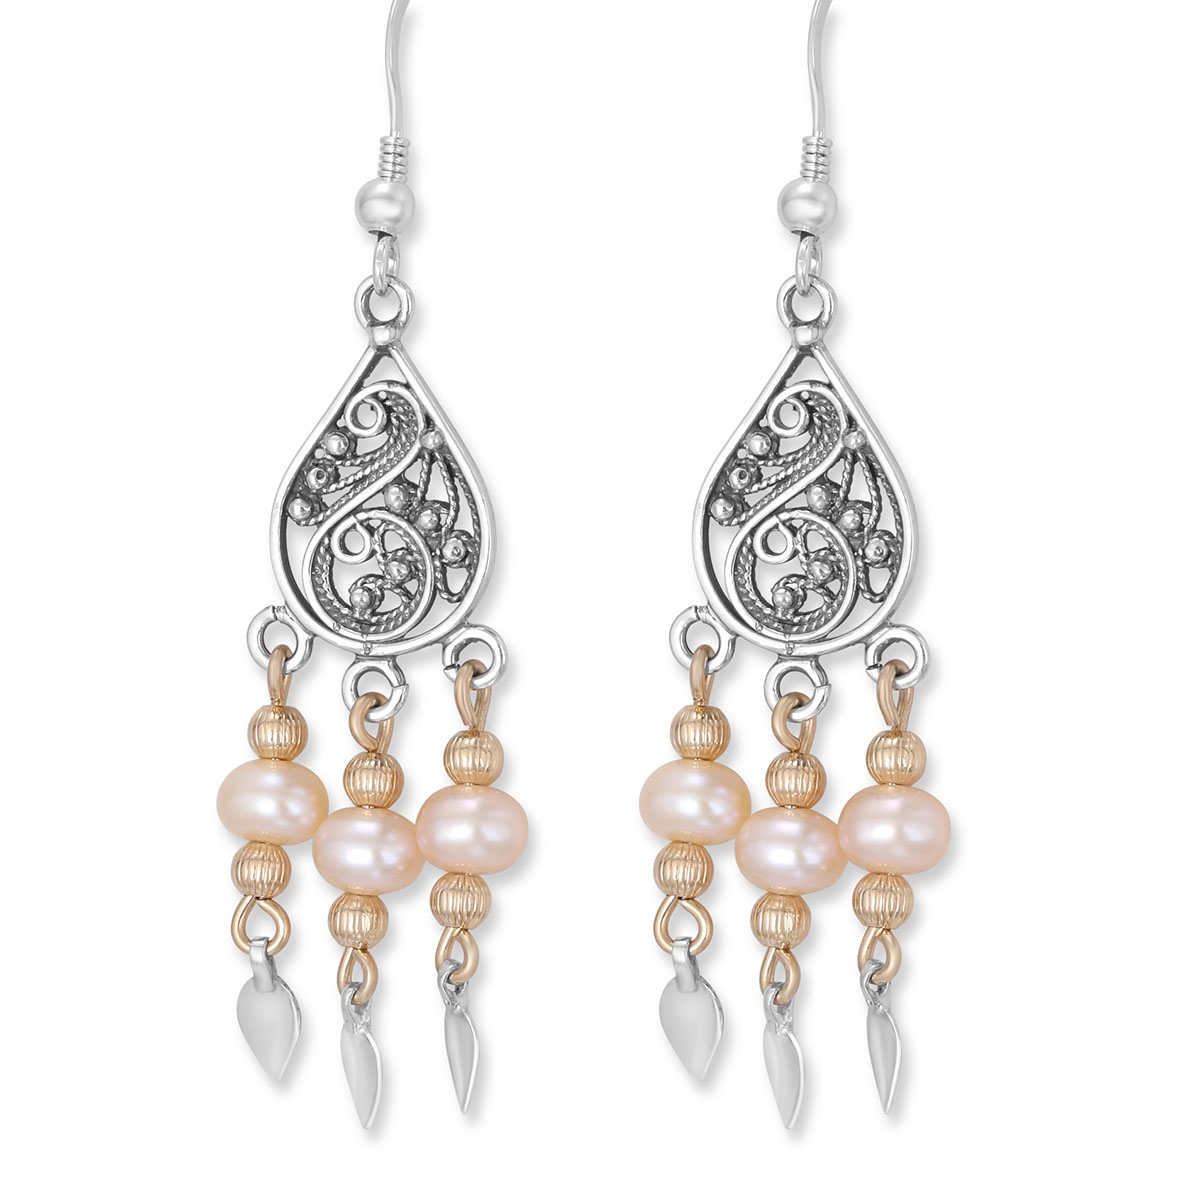 Rafael Jewelry Filigree Sterling Silver with Pearls Teardrop Dream Catcher Earrings - 1